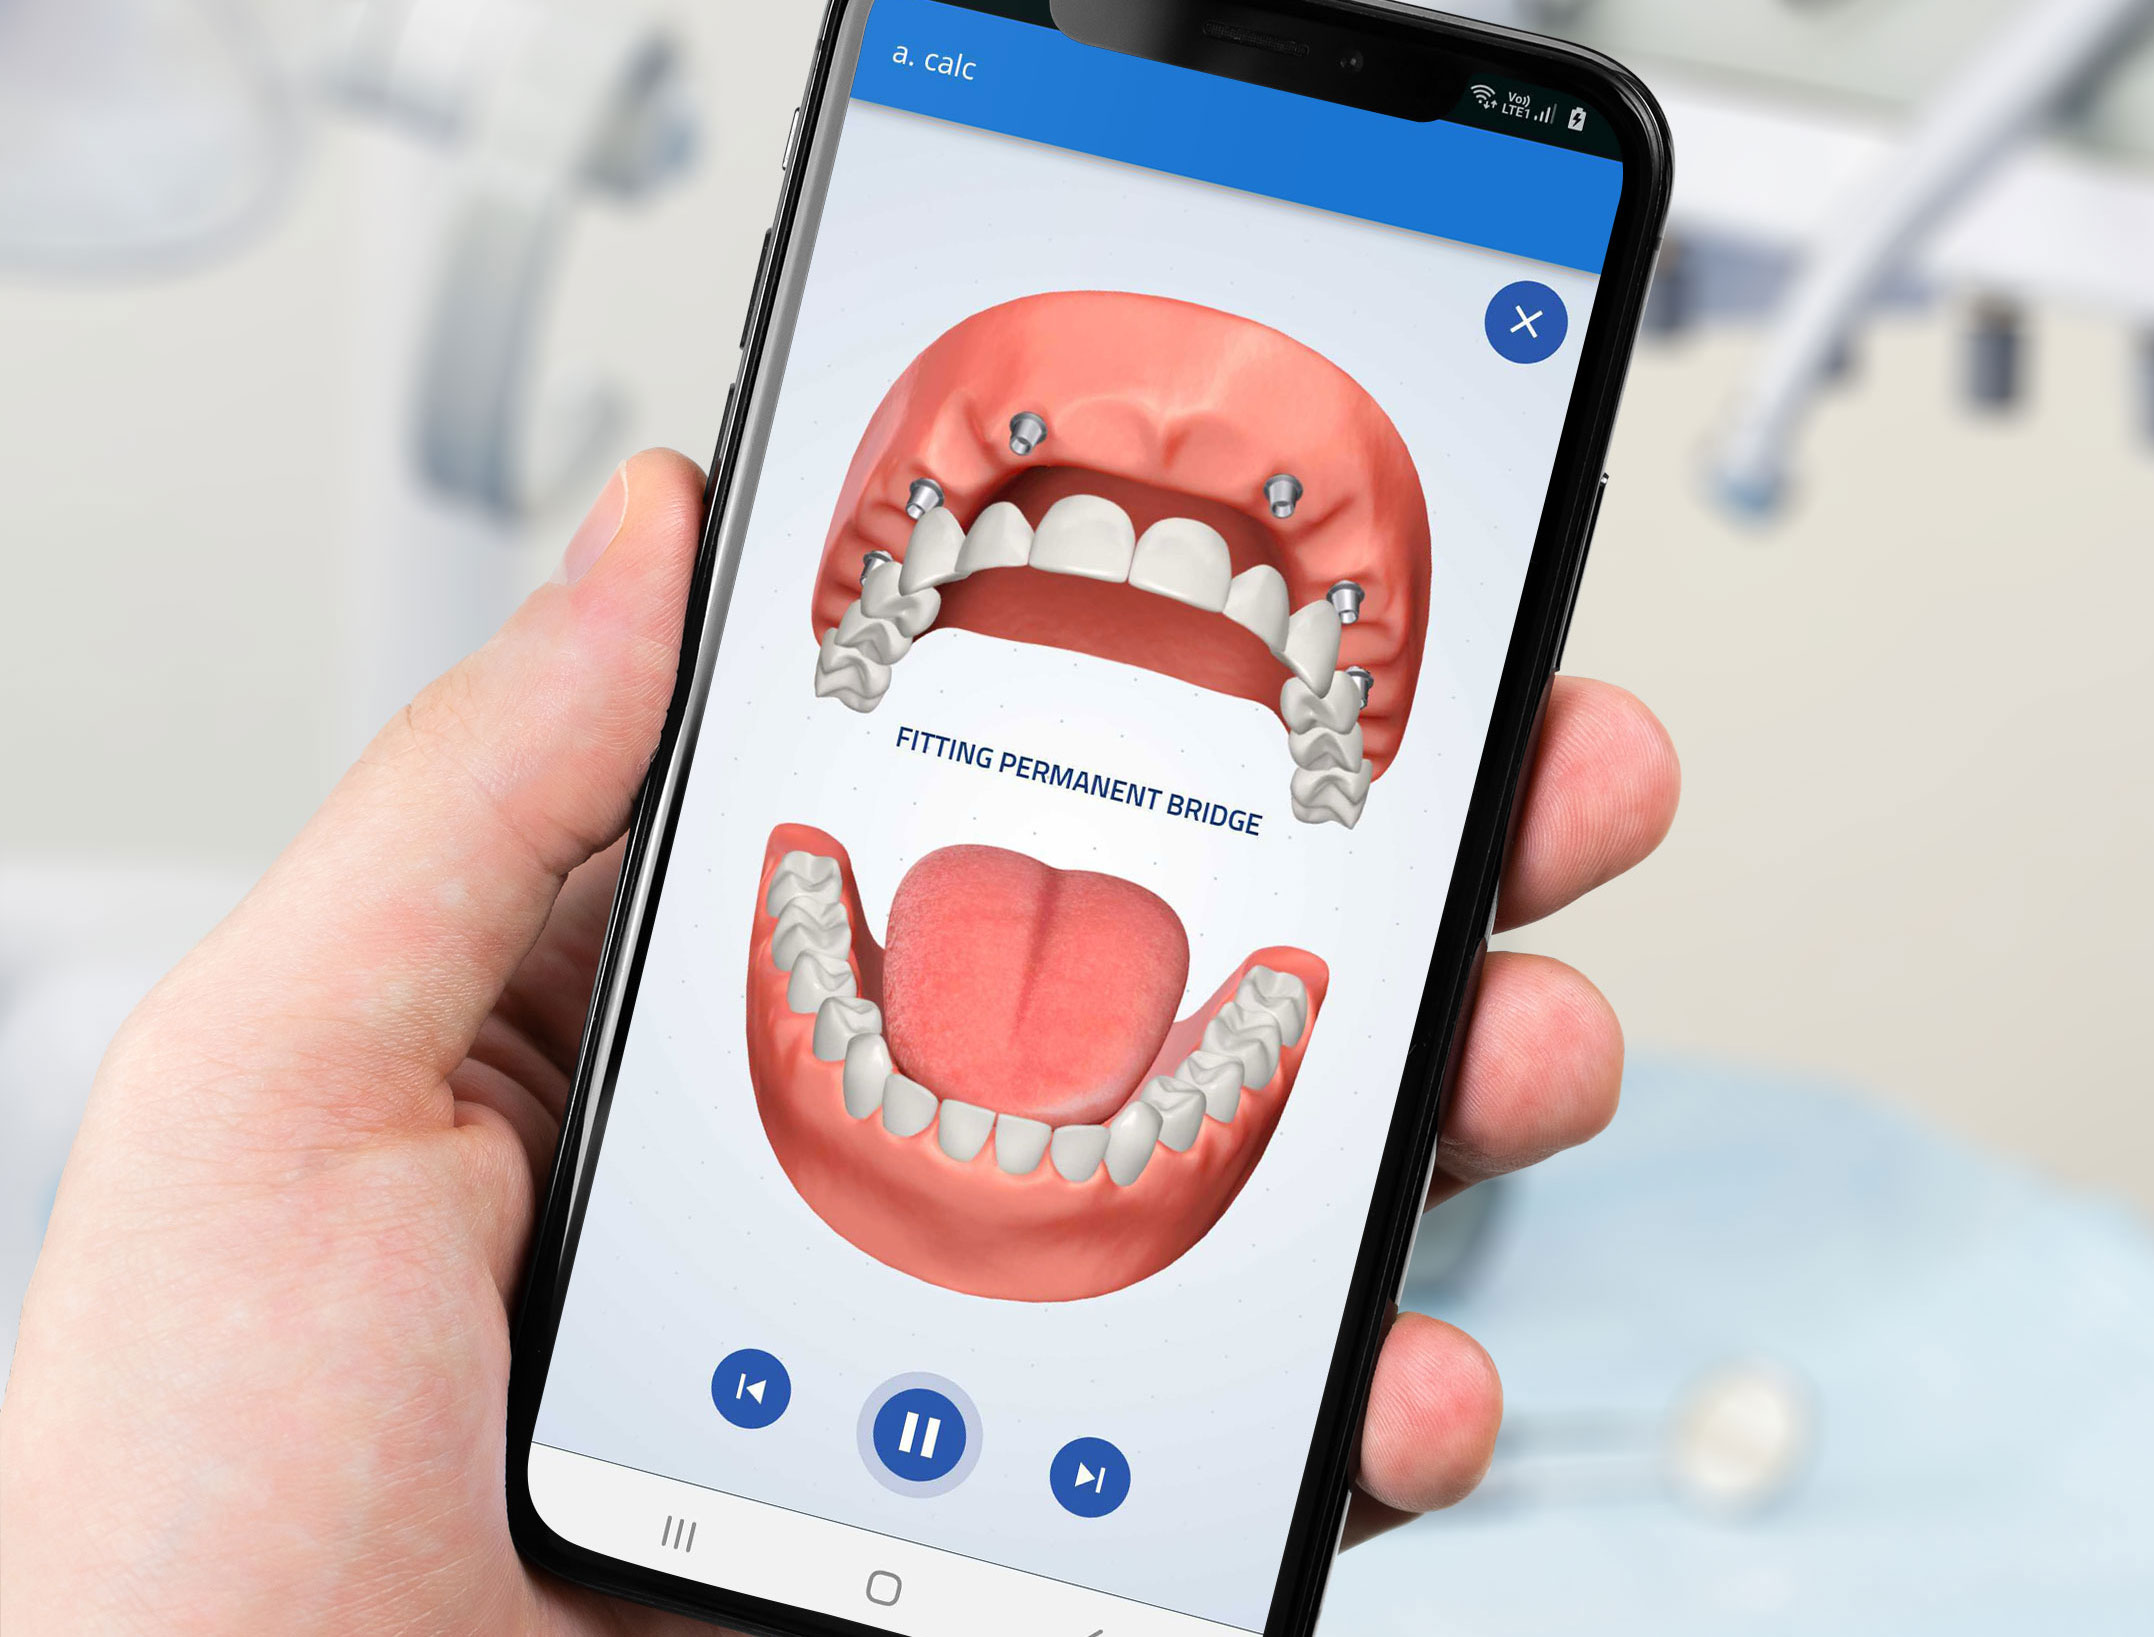 Dentist-patient communication